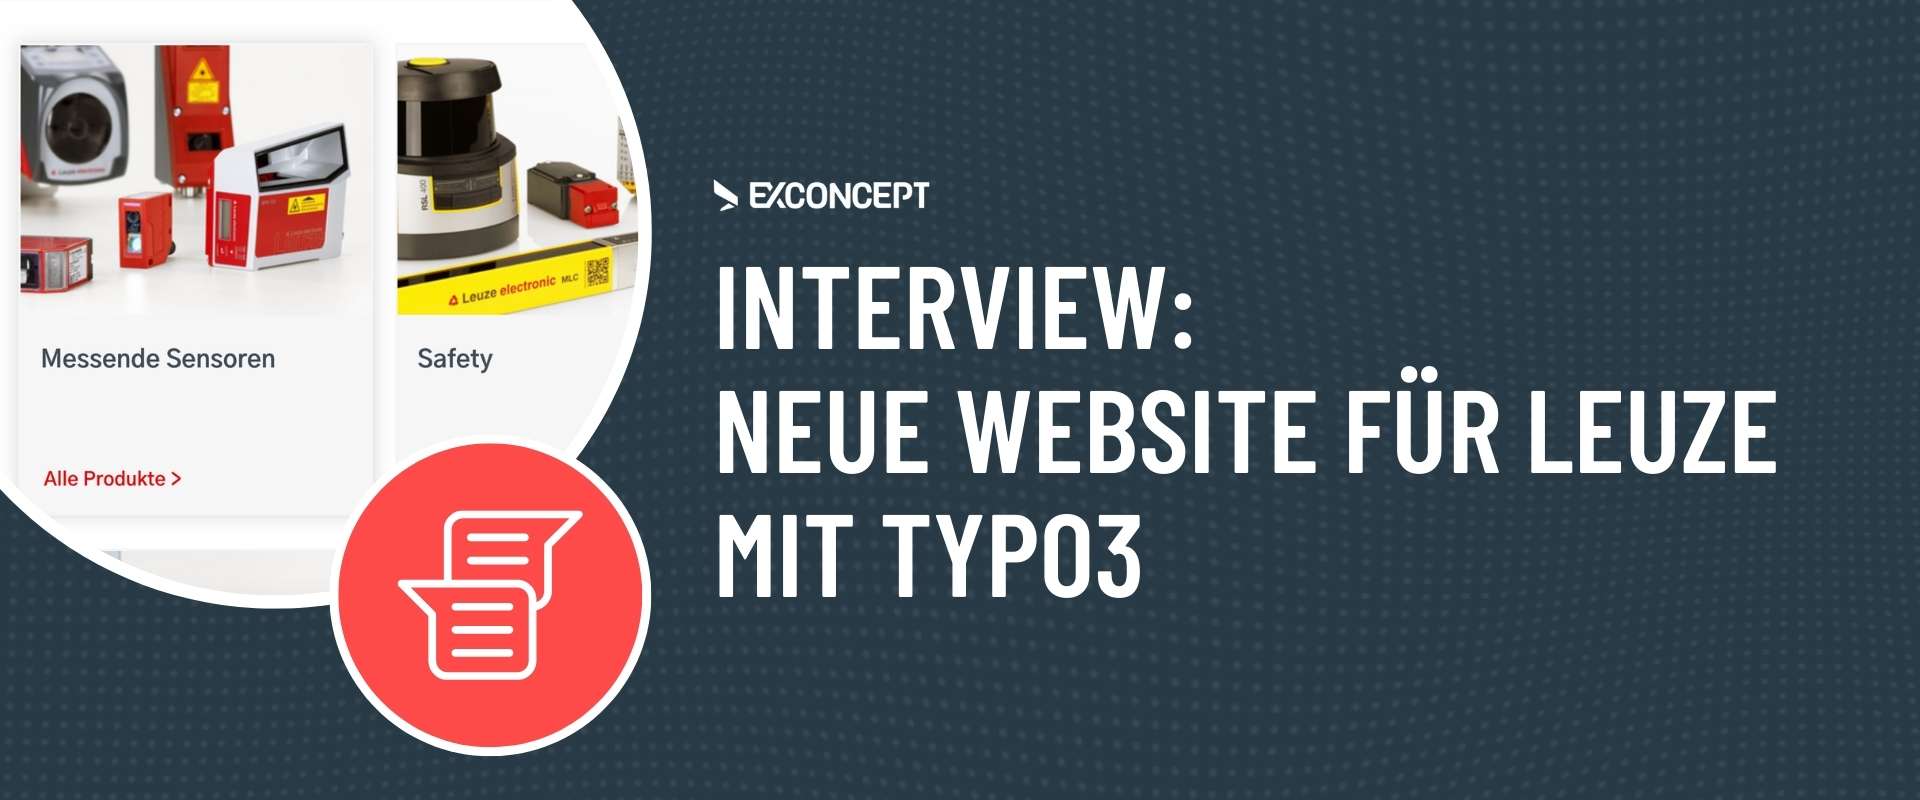 Interview Leuze zum Website-Relaunch mit TYPO3